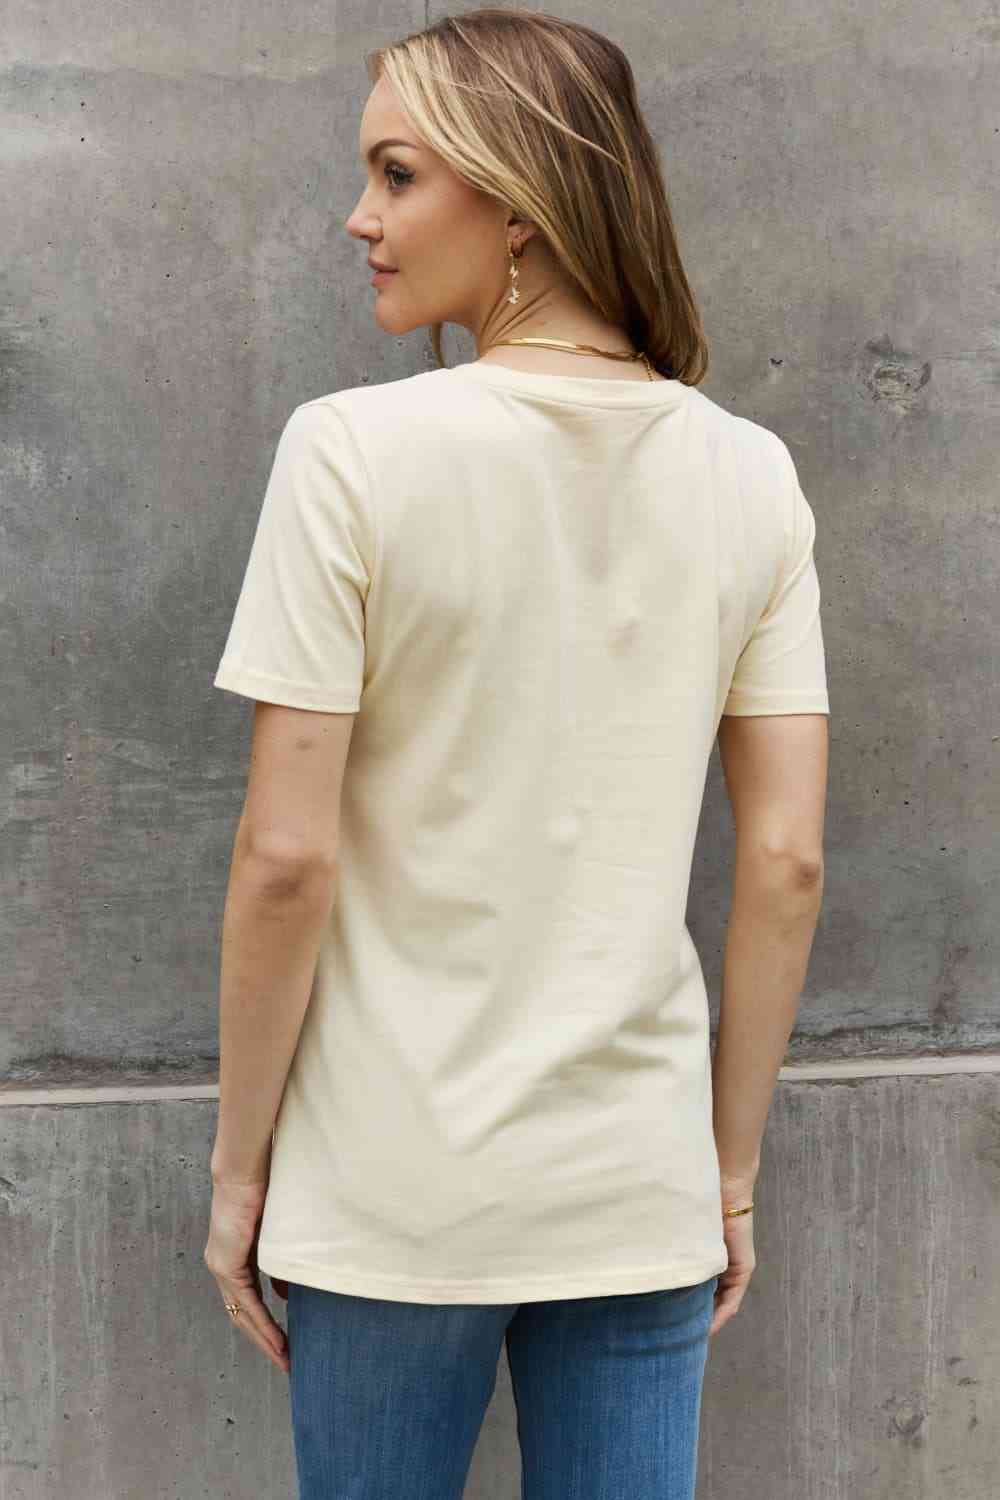 Camiseta de algodón con estampado BEAUTIFUL SOUL de tamaño completo de Simply Love